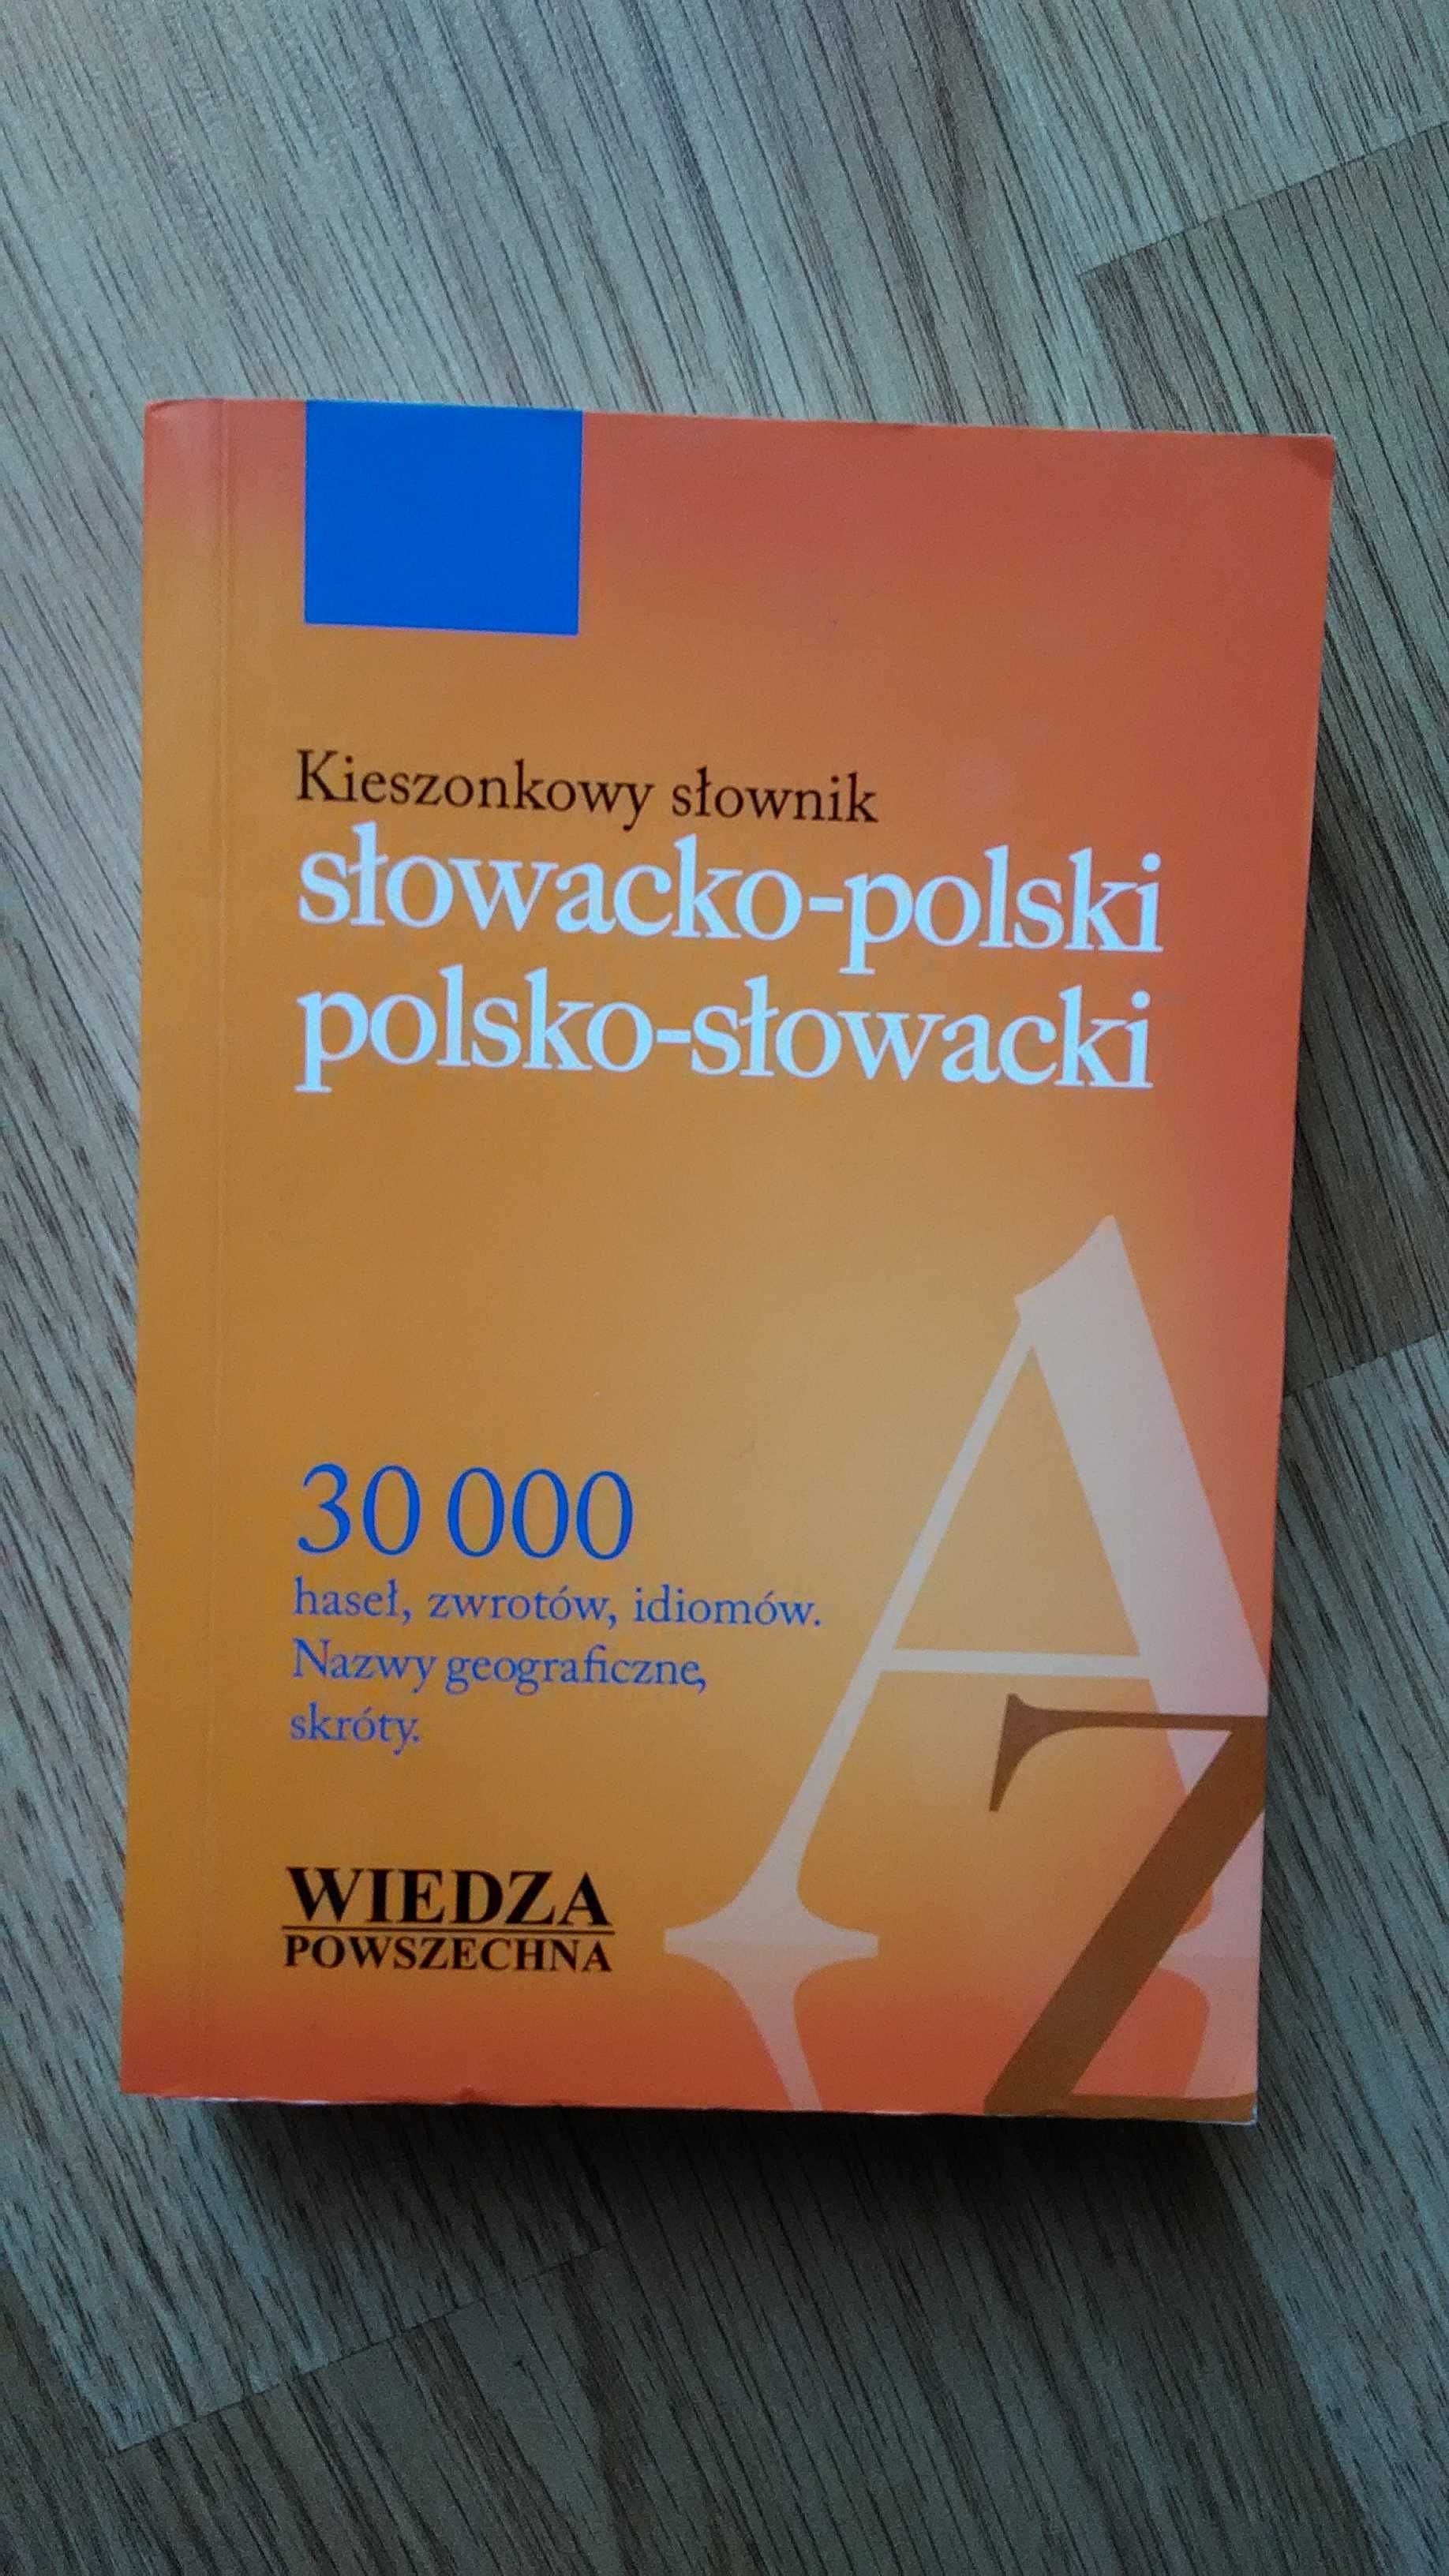 Kieszonkowy słownik słowacko-polski polsko-słowacki